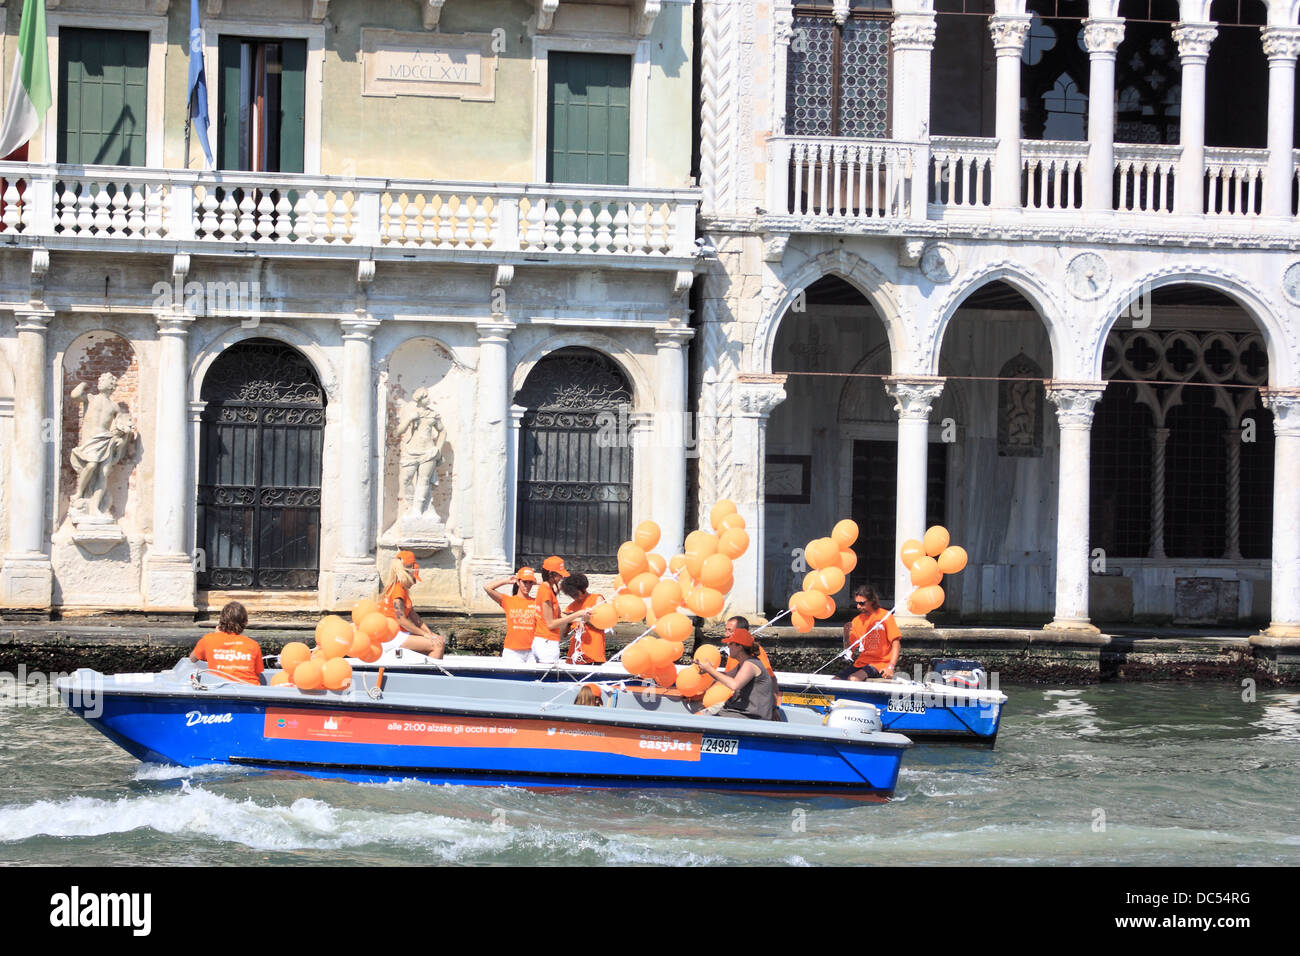 Campagne de publicité d'EasyJet à Venise : 'alle 21:00 alzate gli occhi al cielo' # vogliovolare Banque D'Images